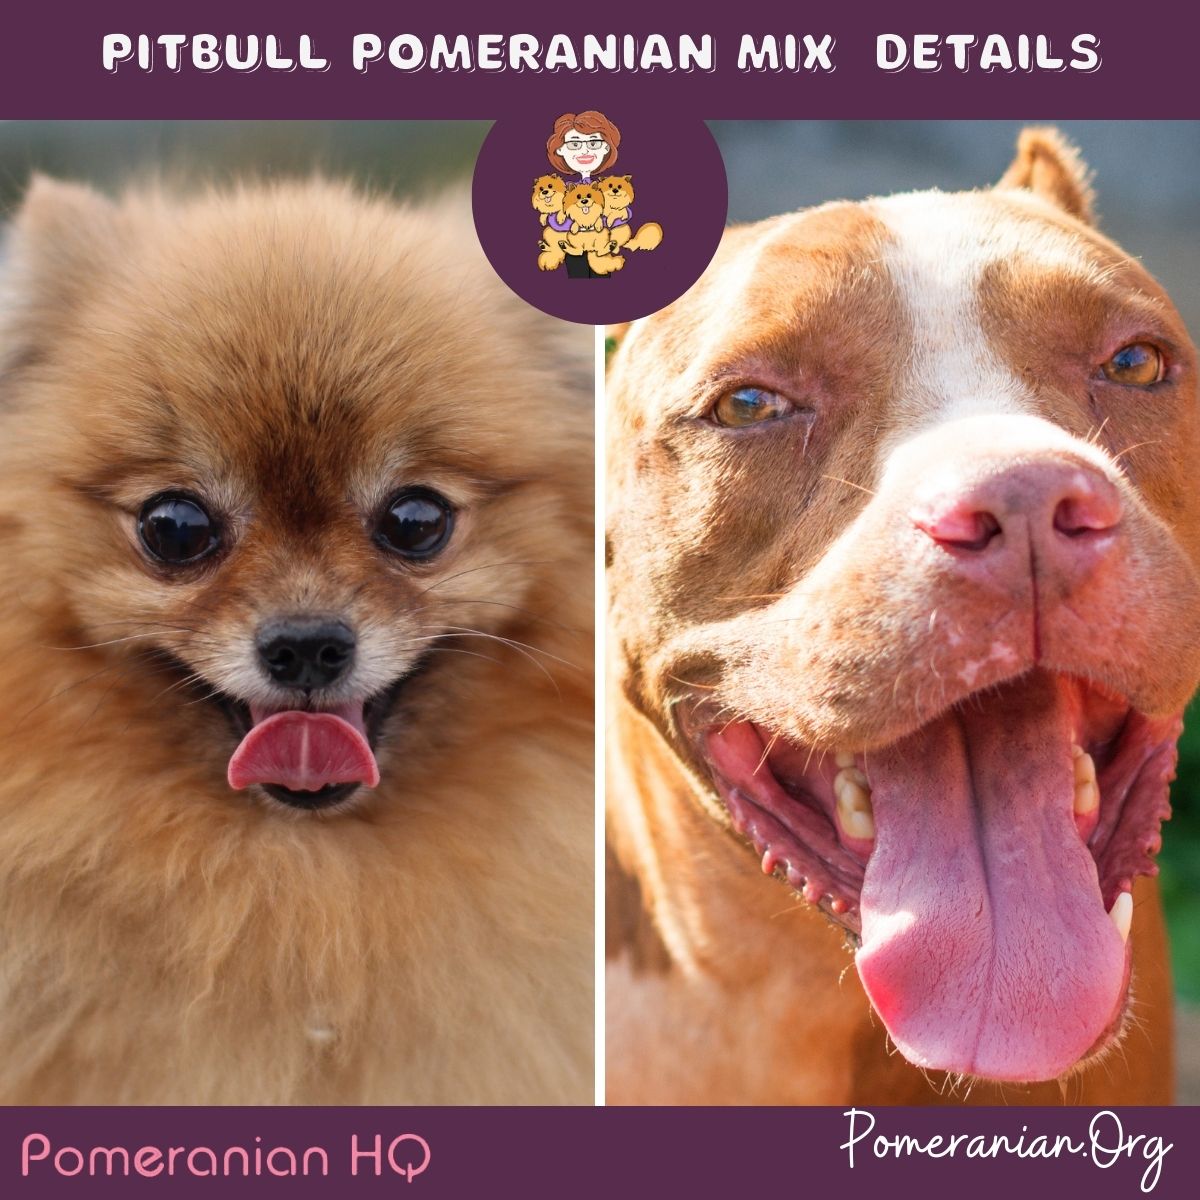 Pitbull Pomeranian mix details